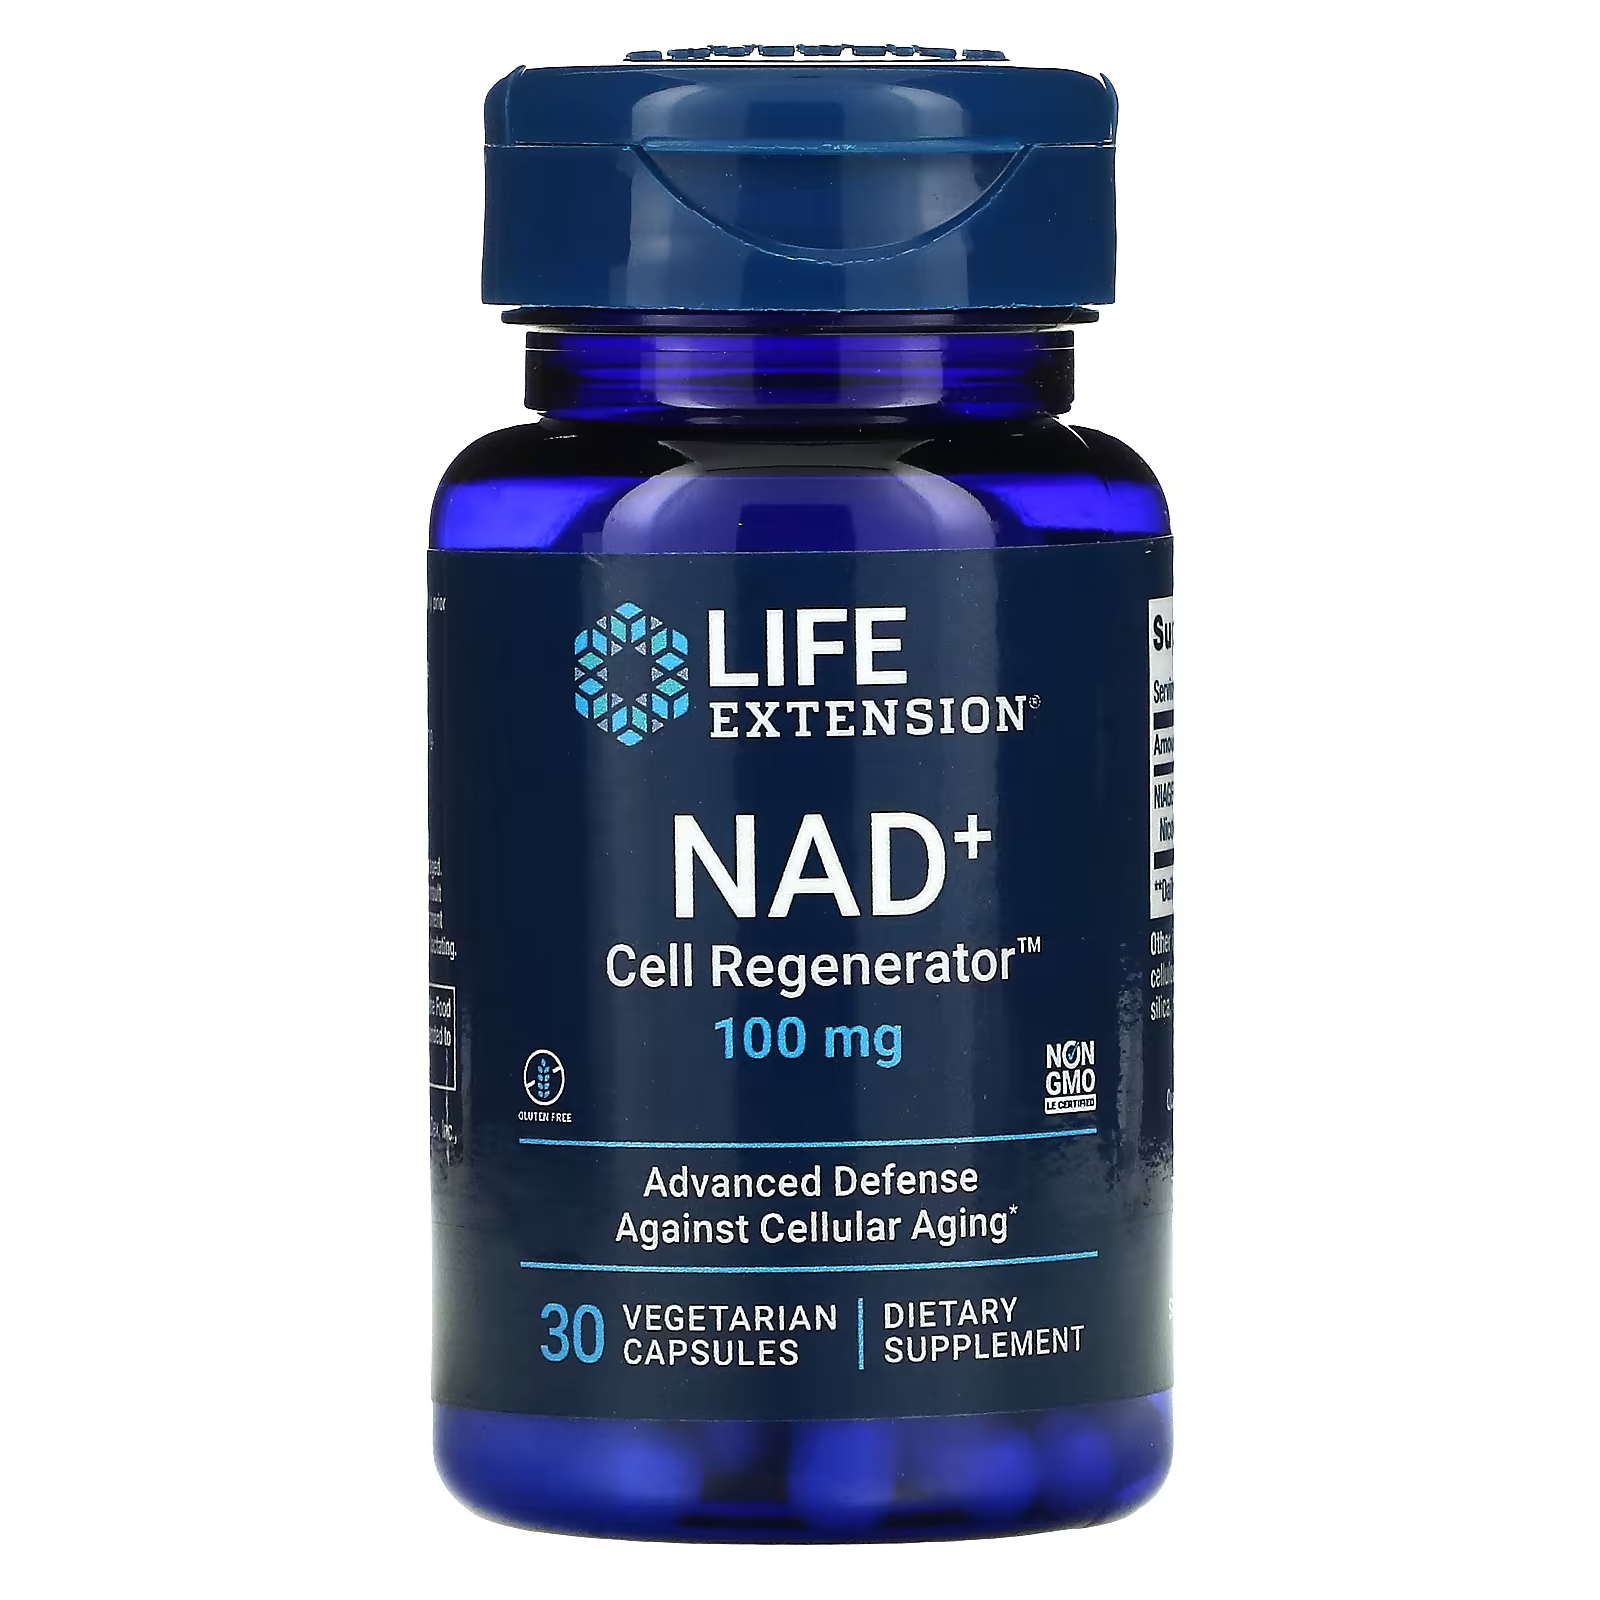 Регенератор НАД и Клеток Life Extension, 30 вегетарианских капсул life extension nad регенератор клеток niagen никотинамид рибозид 100 мг